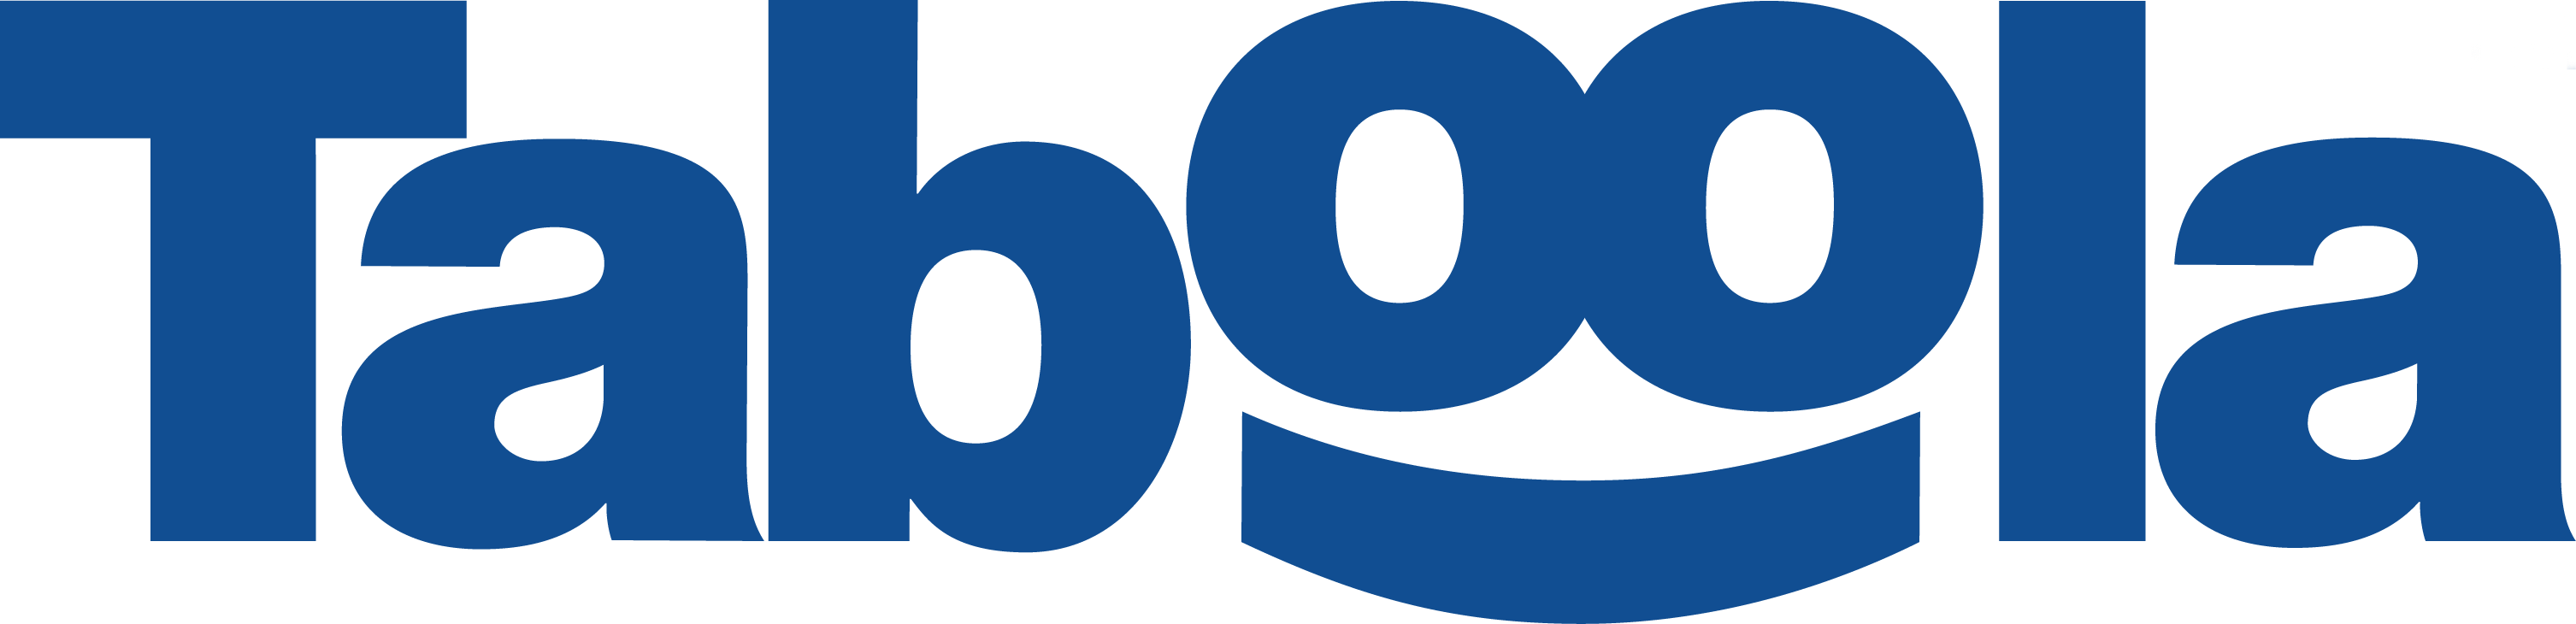 Taboola logo image